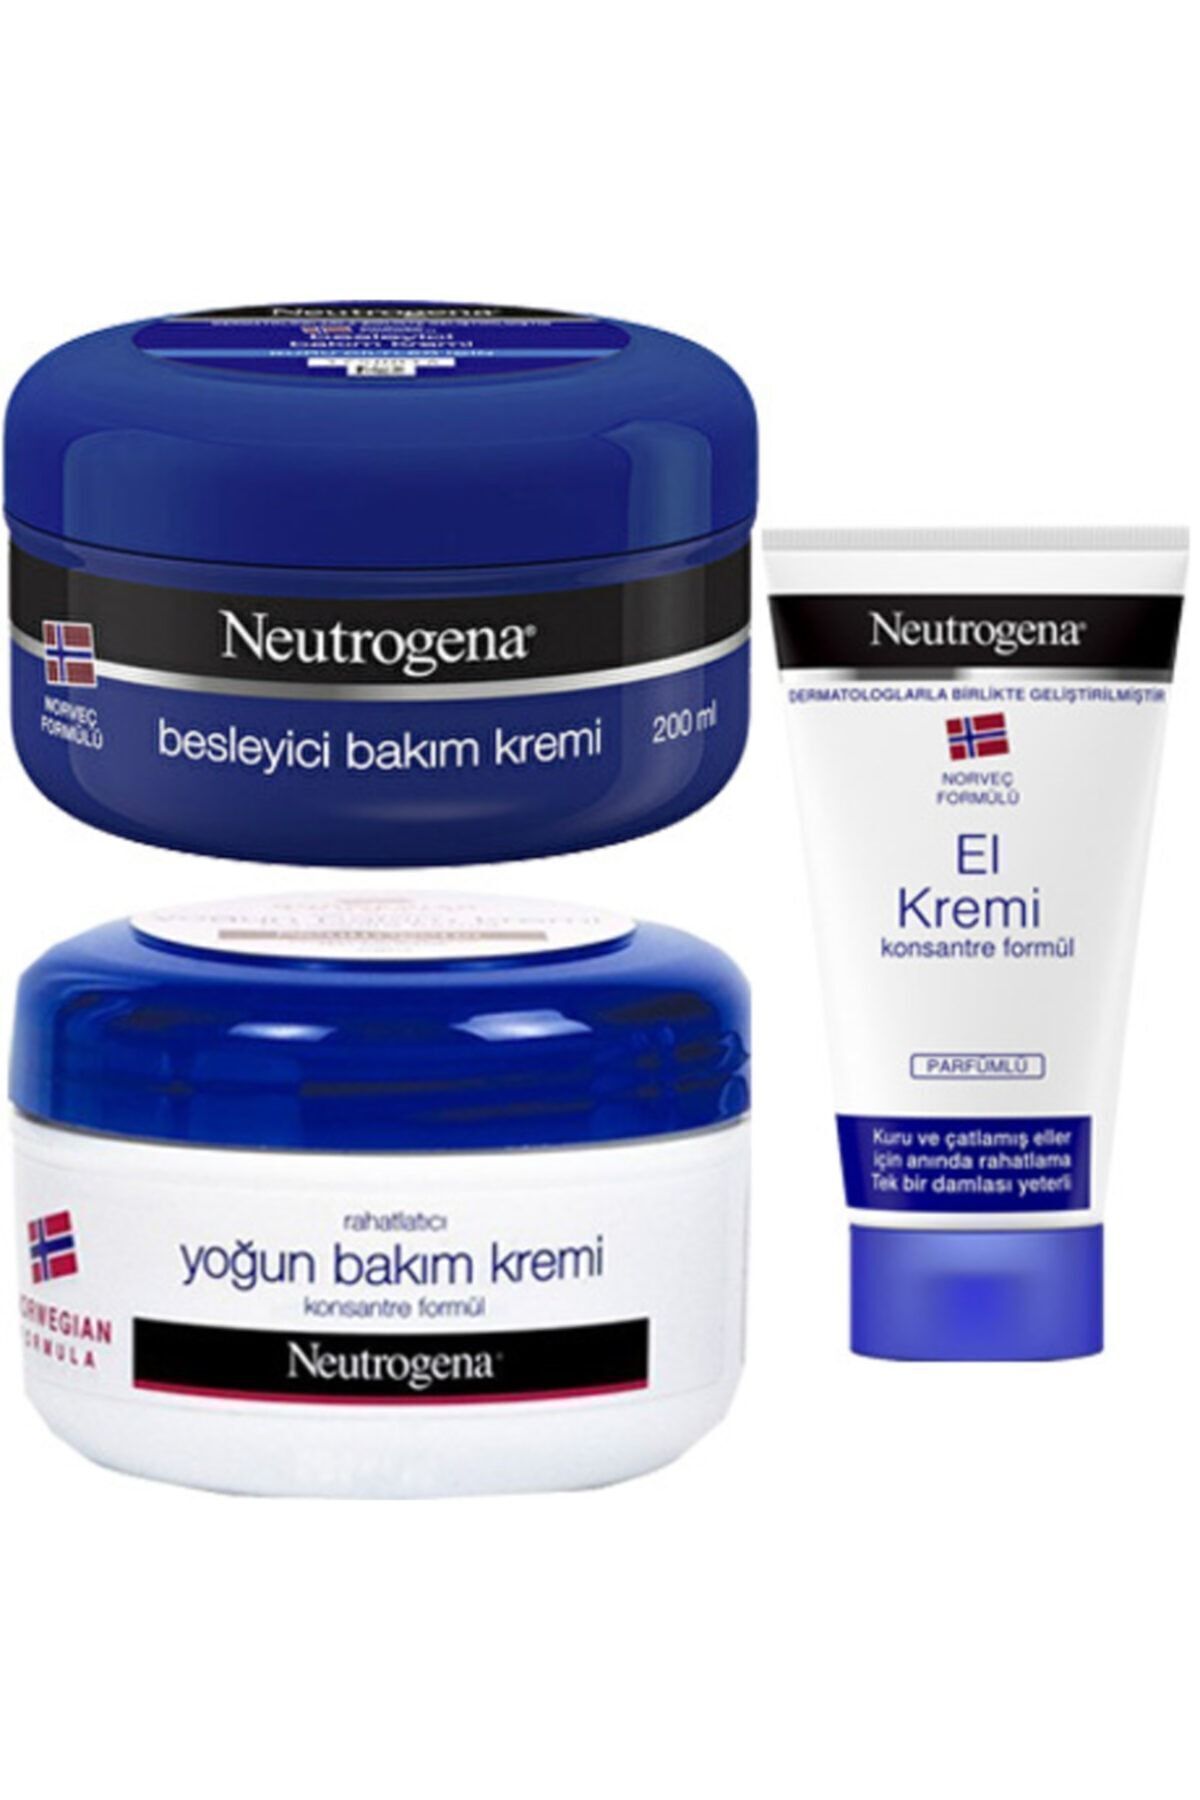 Neutrogena Besleyici Bakım Kremi + Yoğun Bakım Kremi 200+200 ml + El Kremi Parfümlü 50 ml